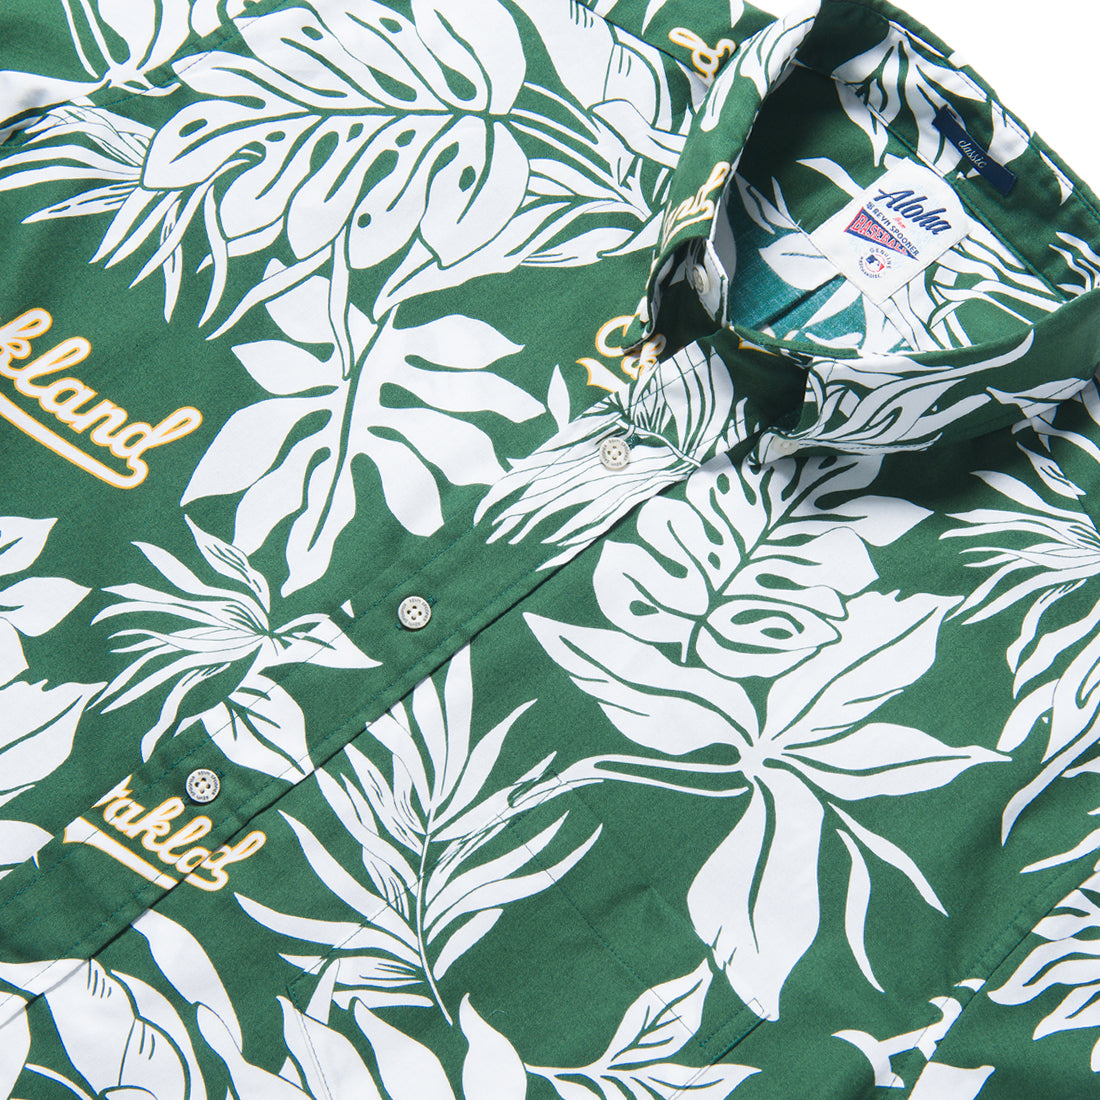 oakland athletics hawaiian shirt